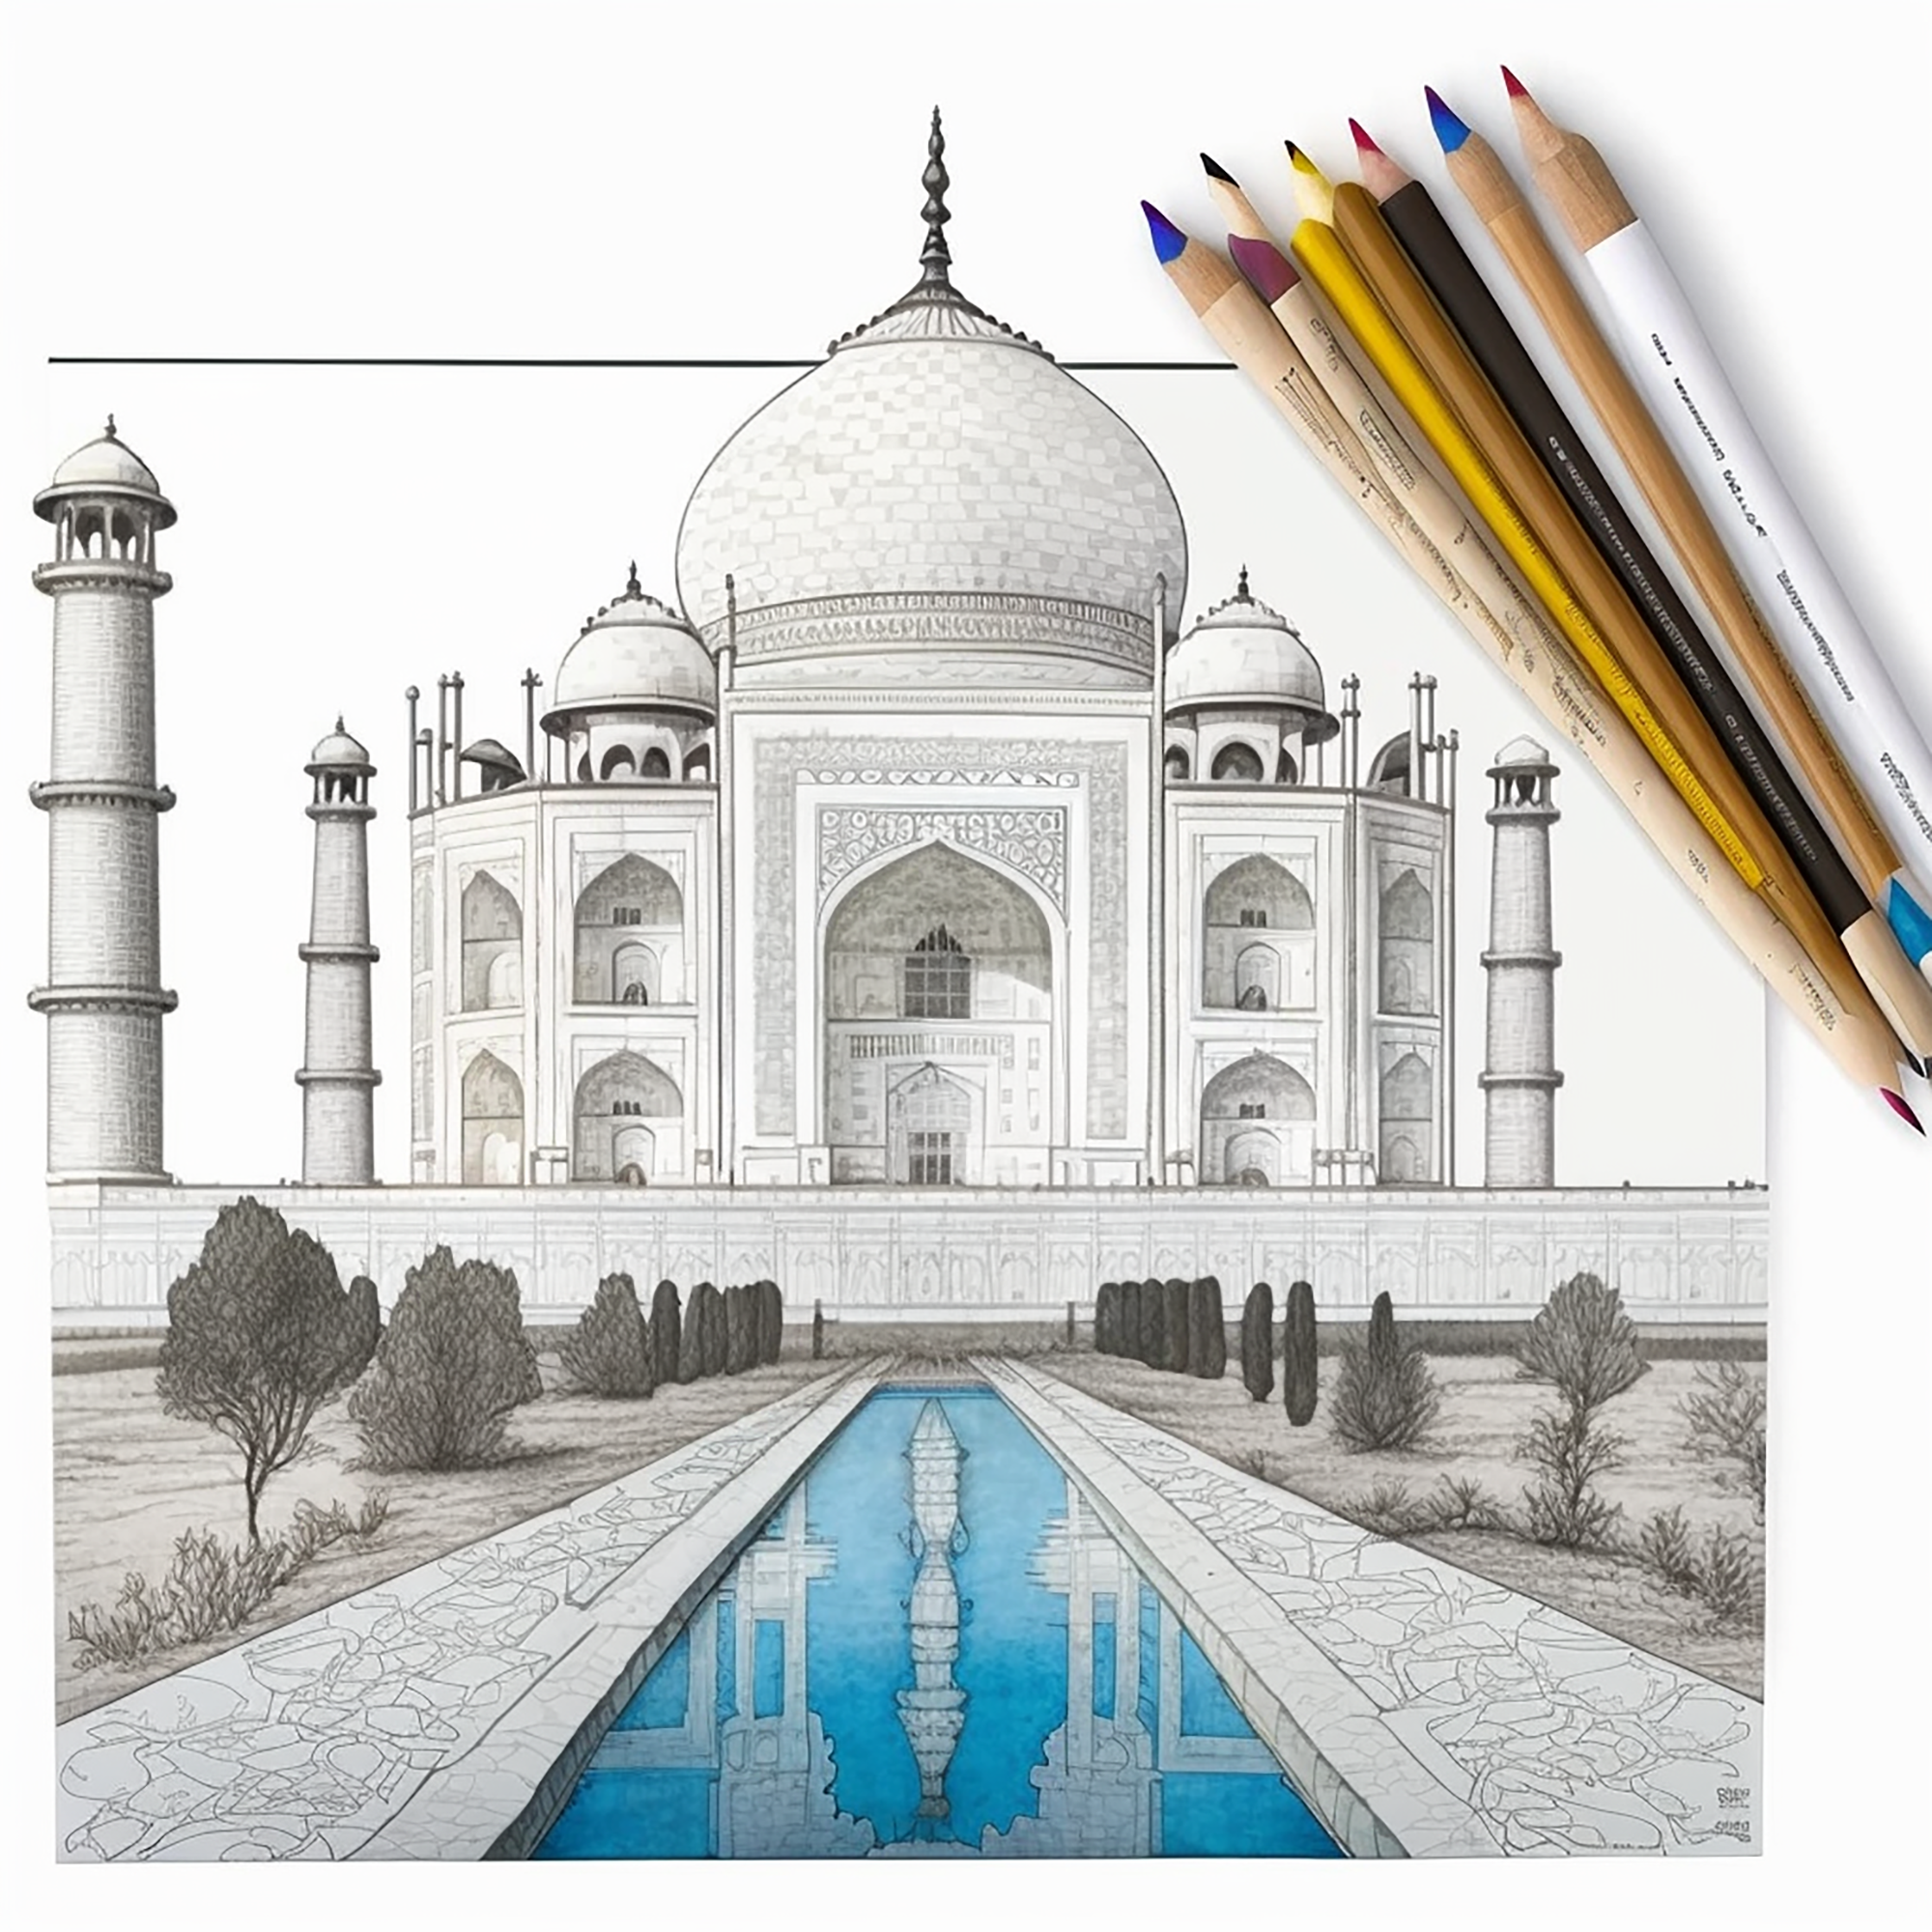 0201-The Taj Mahal in India, coloring book